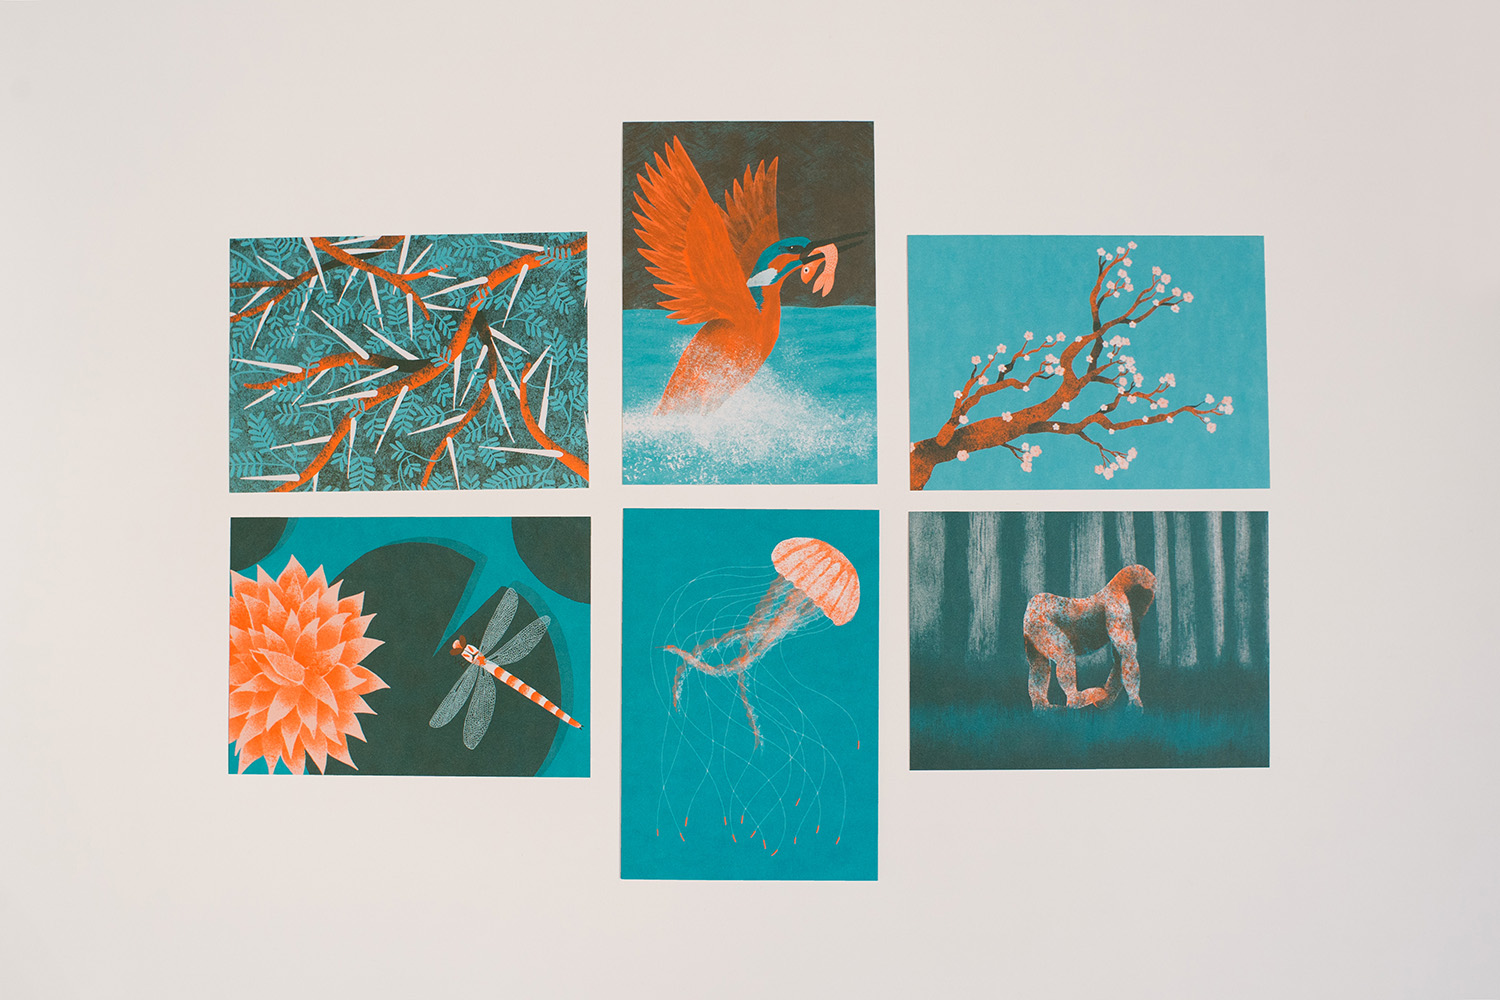 Vue d'ensemble du lot de cartes, illustrées par Juliette Maroni pour les éditions du Trainailleur